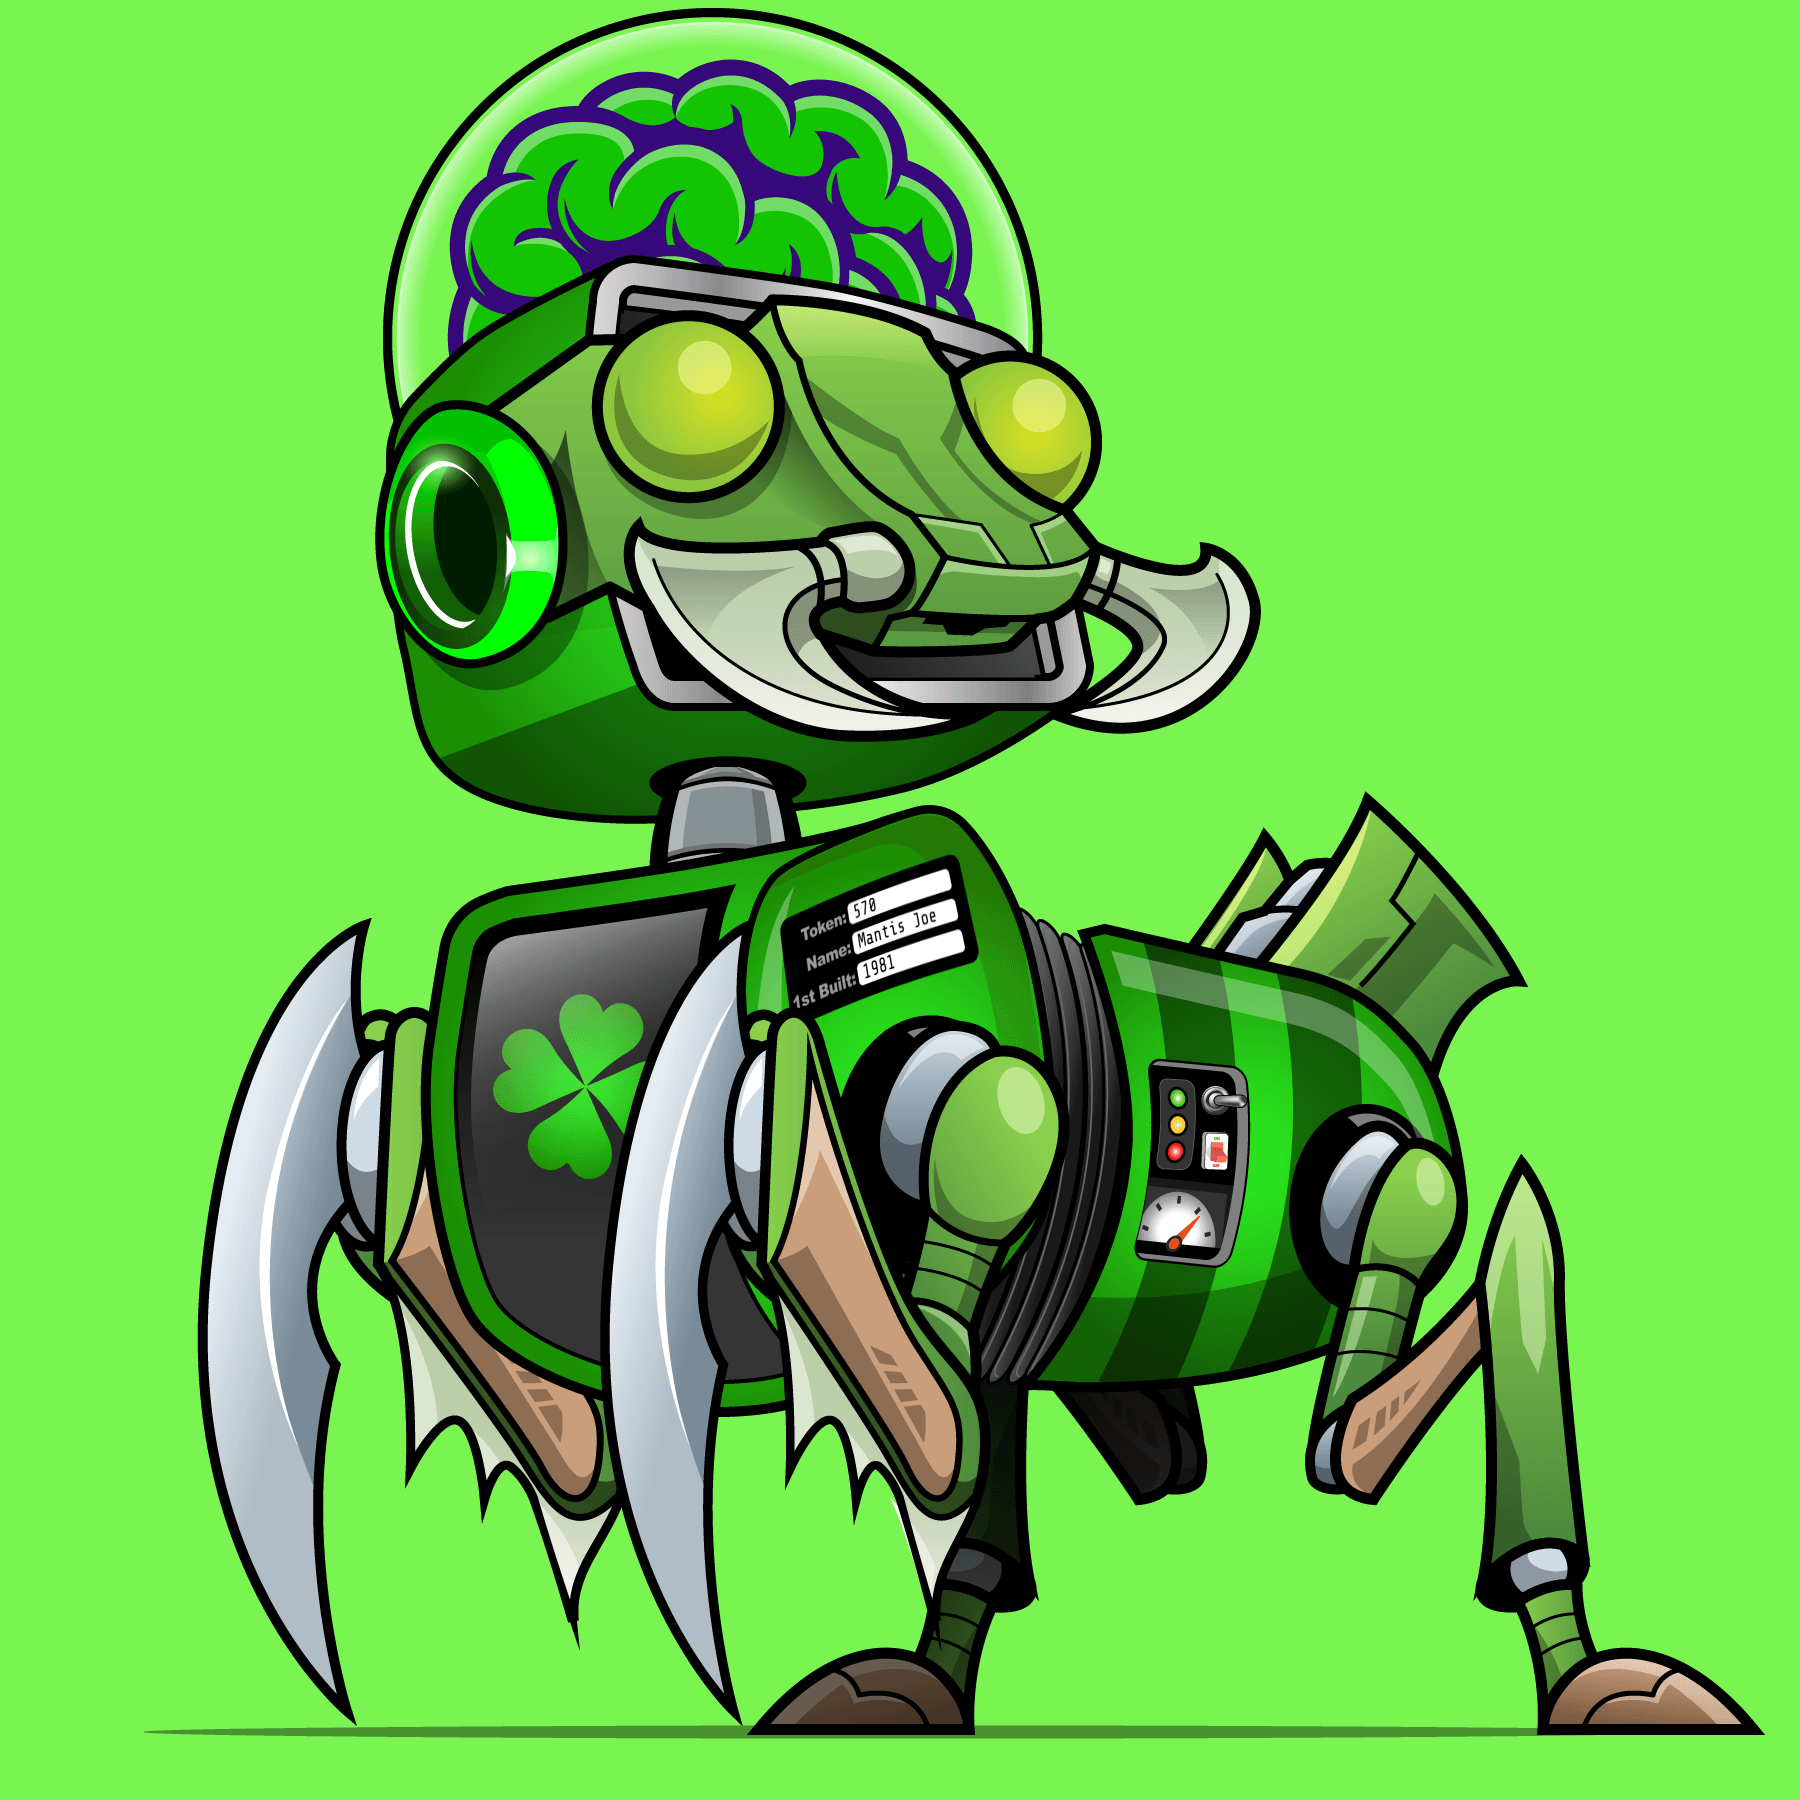 Zoilo RoboPet #570 - "Mantis Joe"